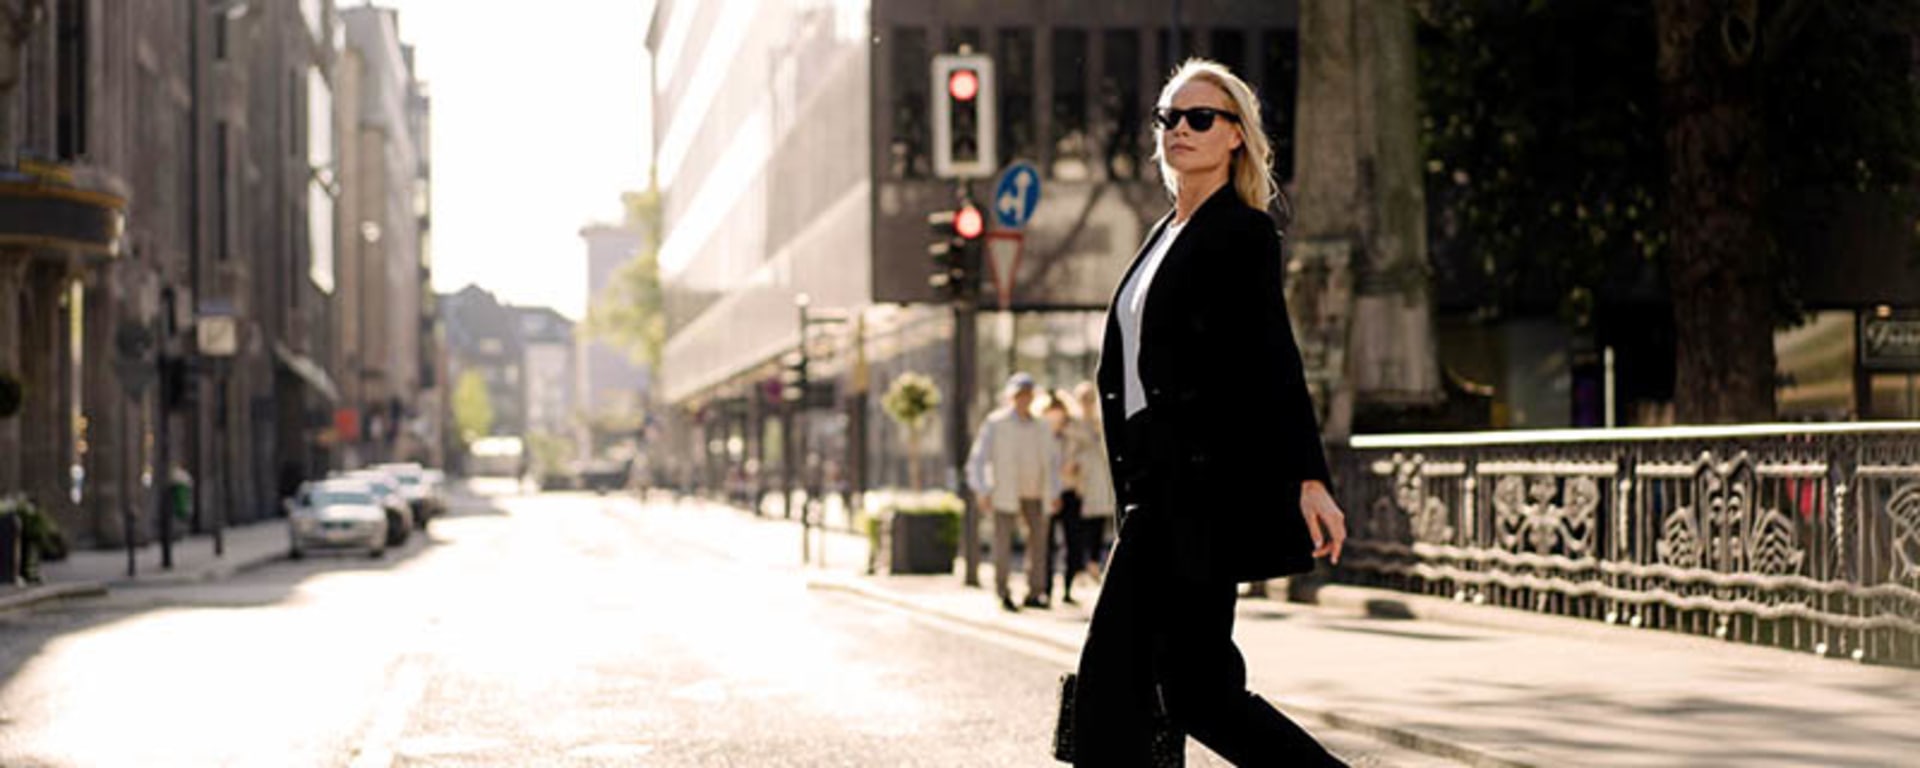 Una donna in abito nero e occhiali da sole attraversa con sicurezza una strada.